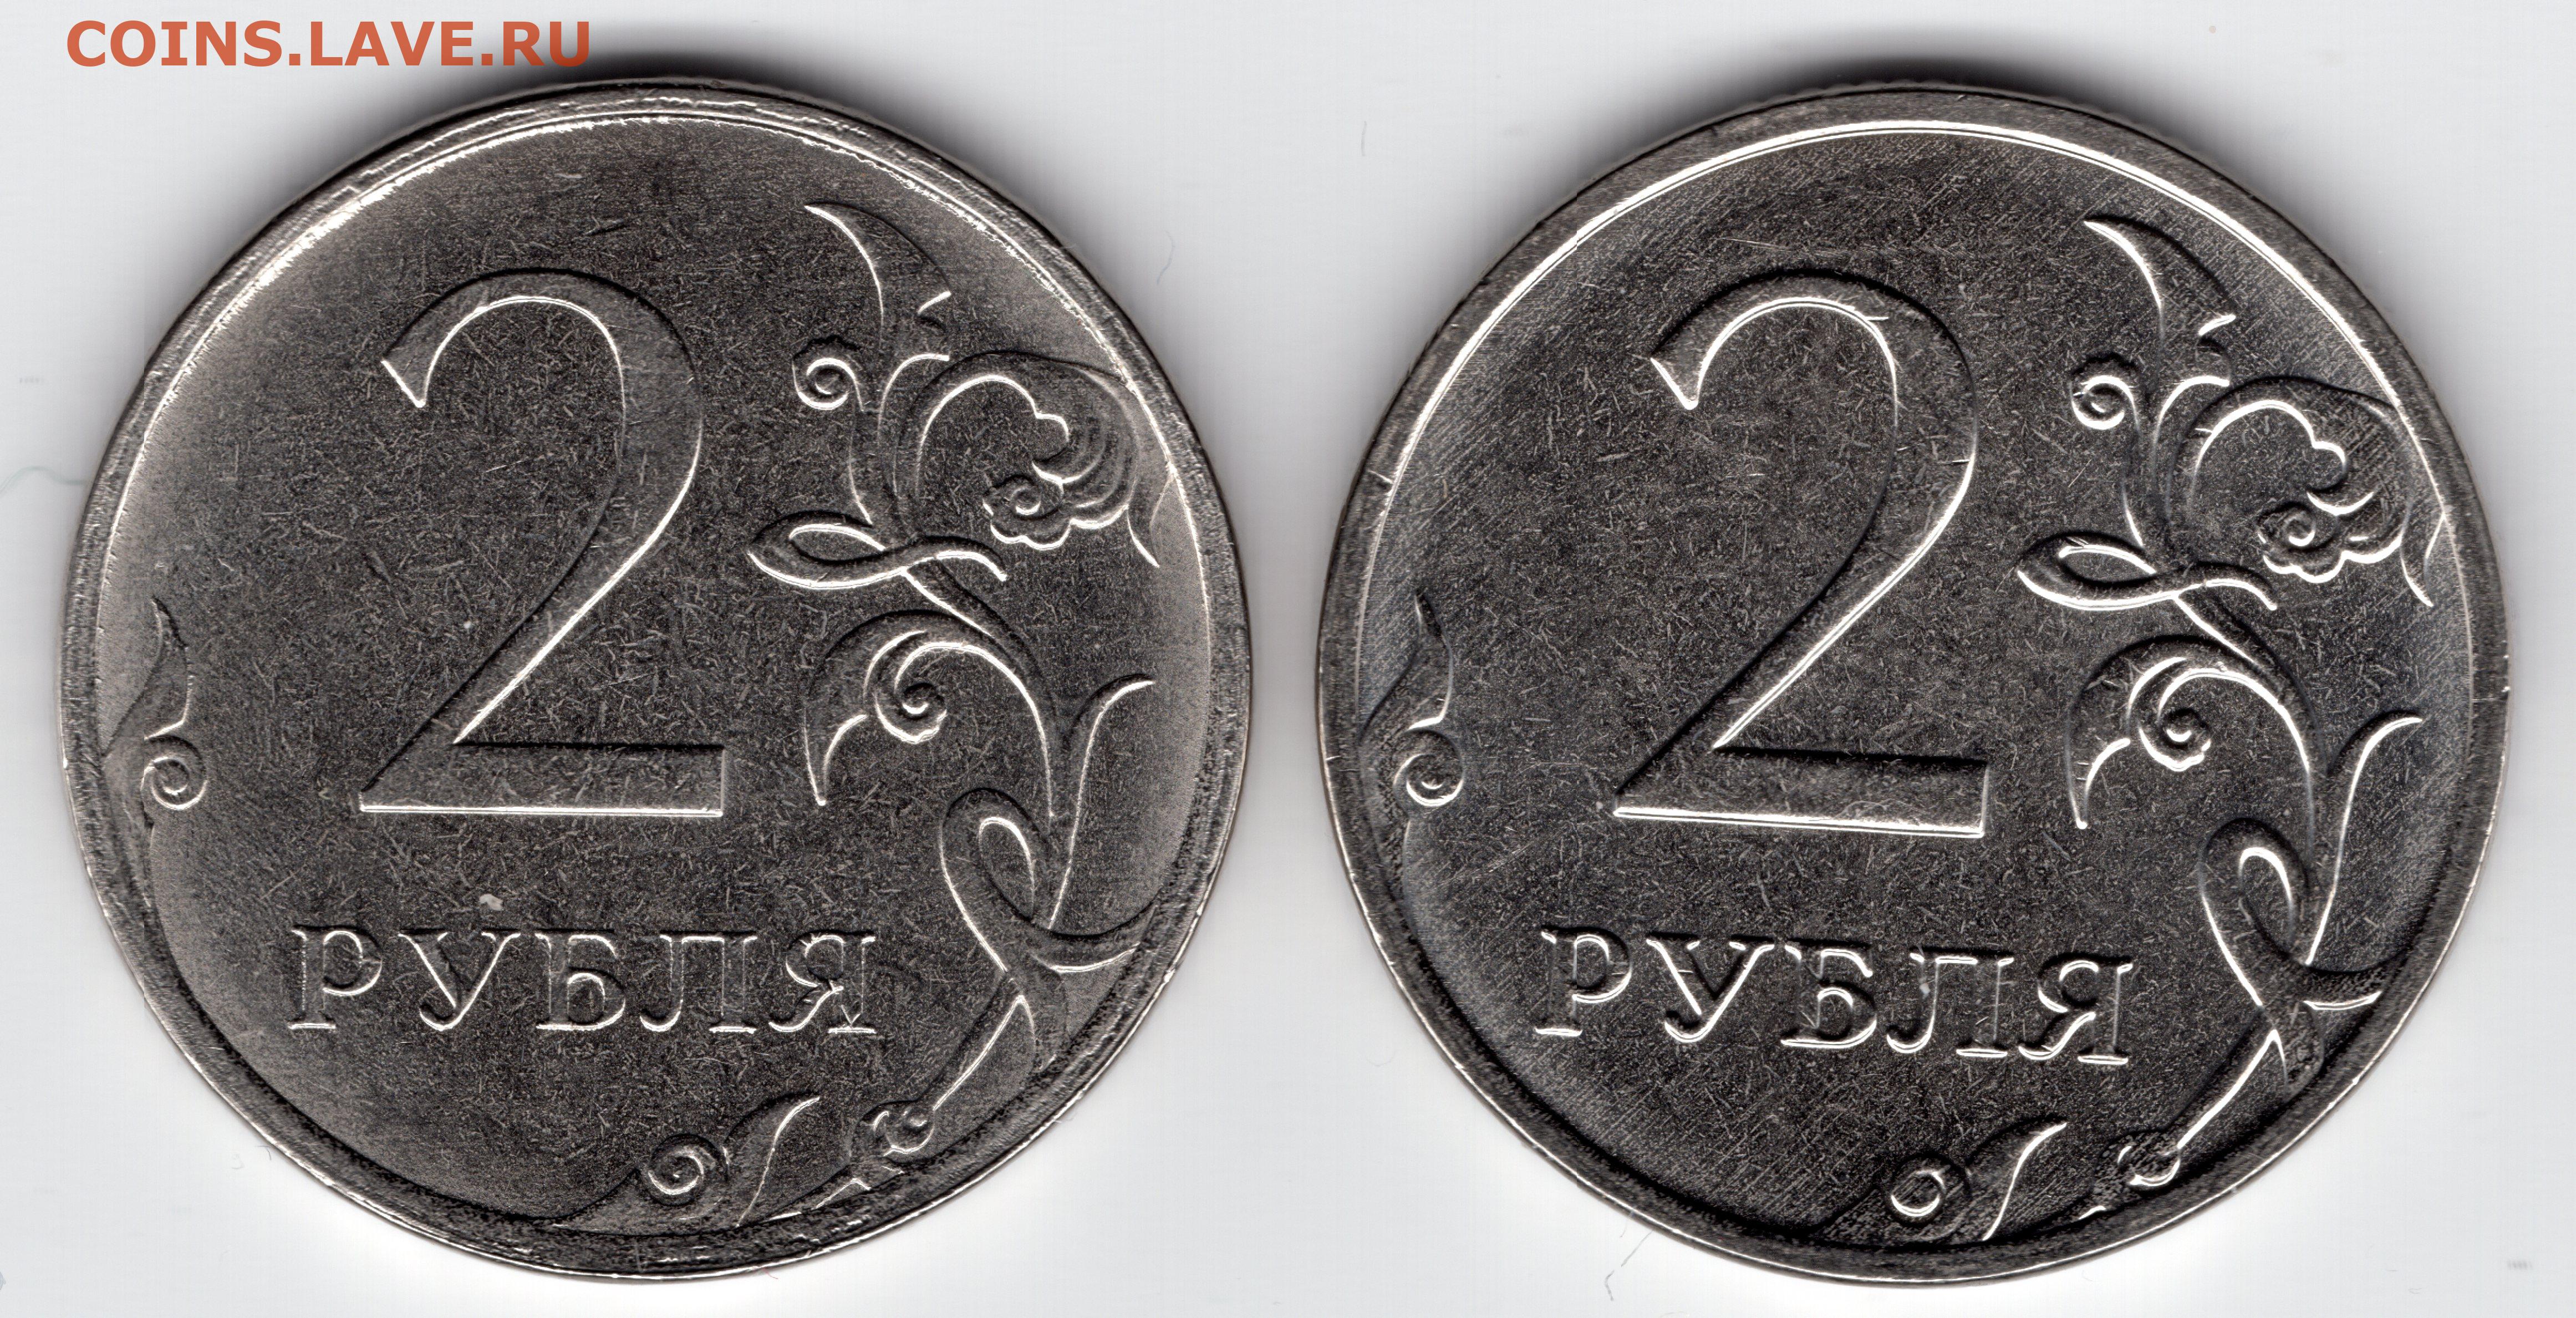 80 рублей 39. Монета два рубля. Брак монеты 5 рублей 2009г. 1 Рубль шт а шт б. 2 Рубля 2012 с браком.